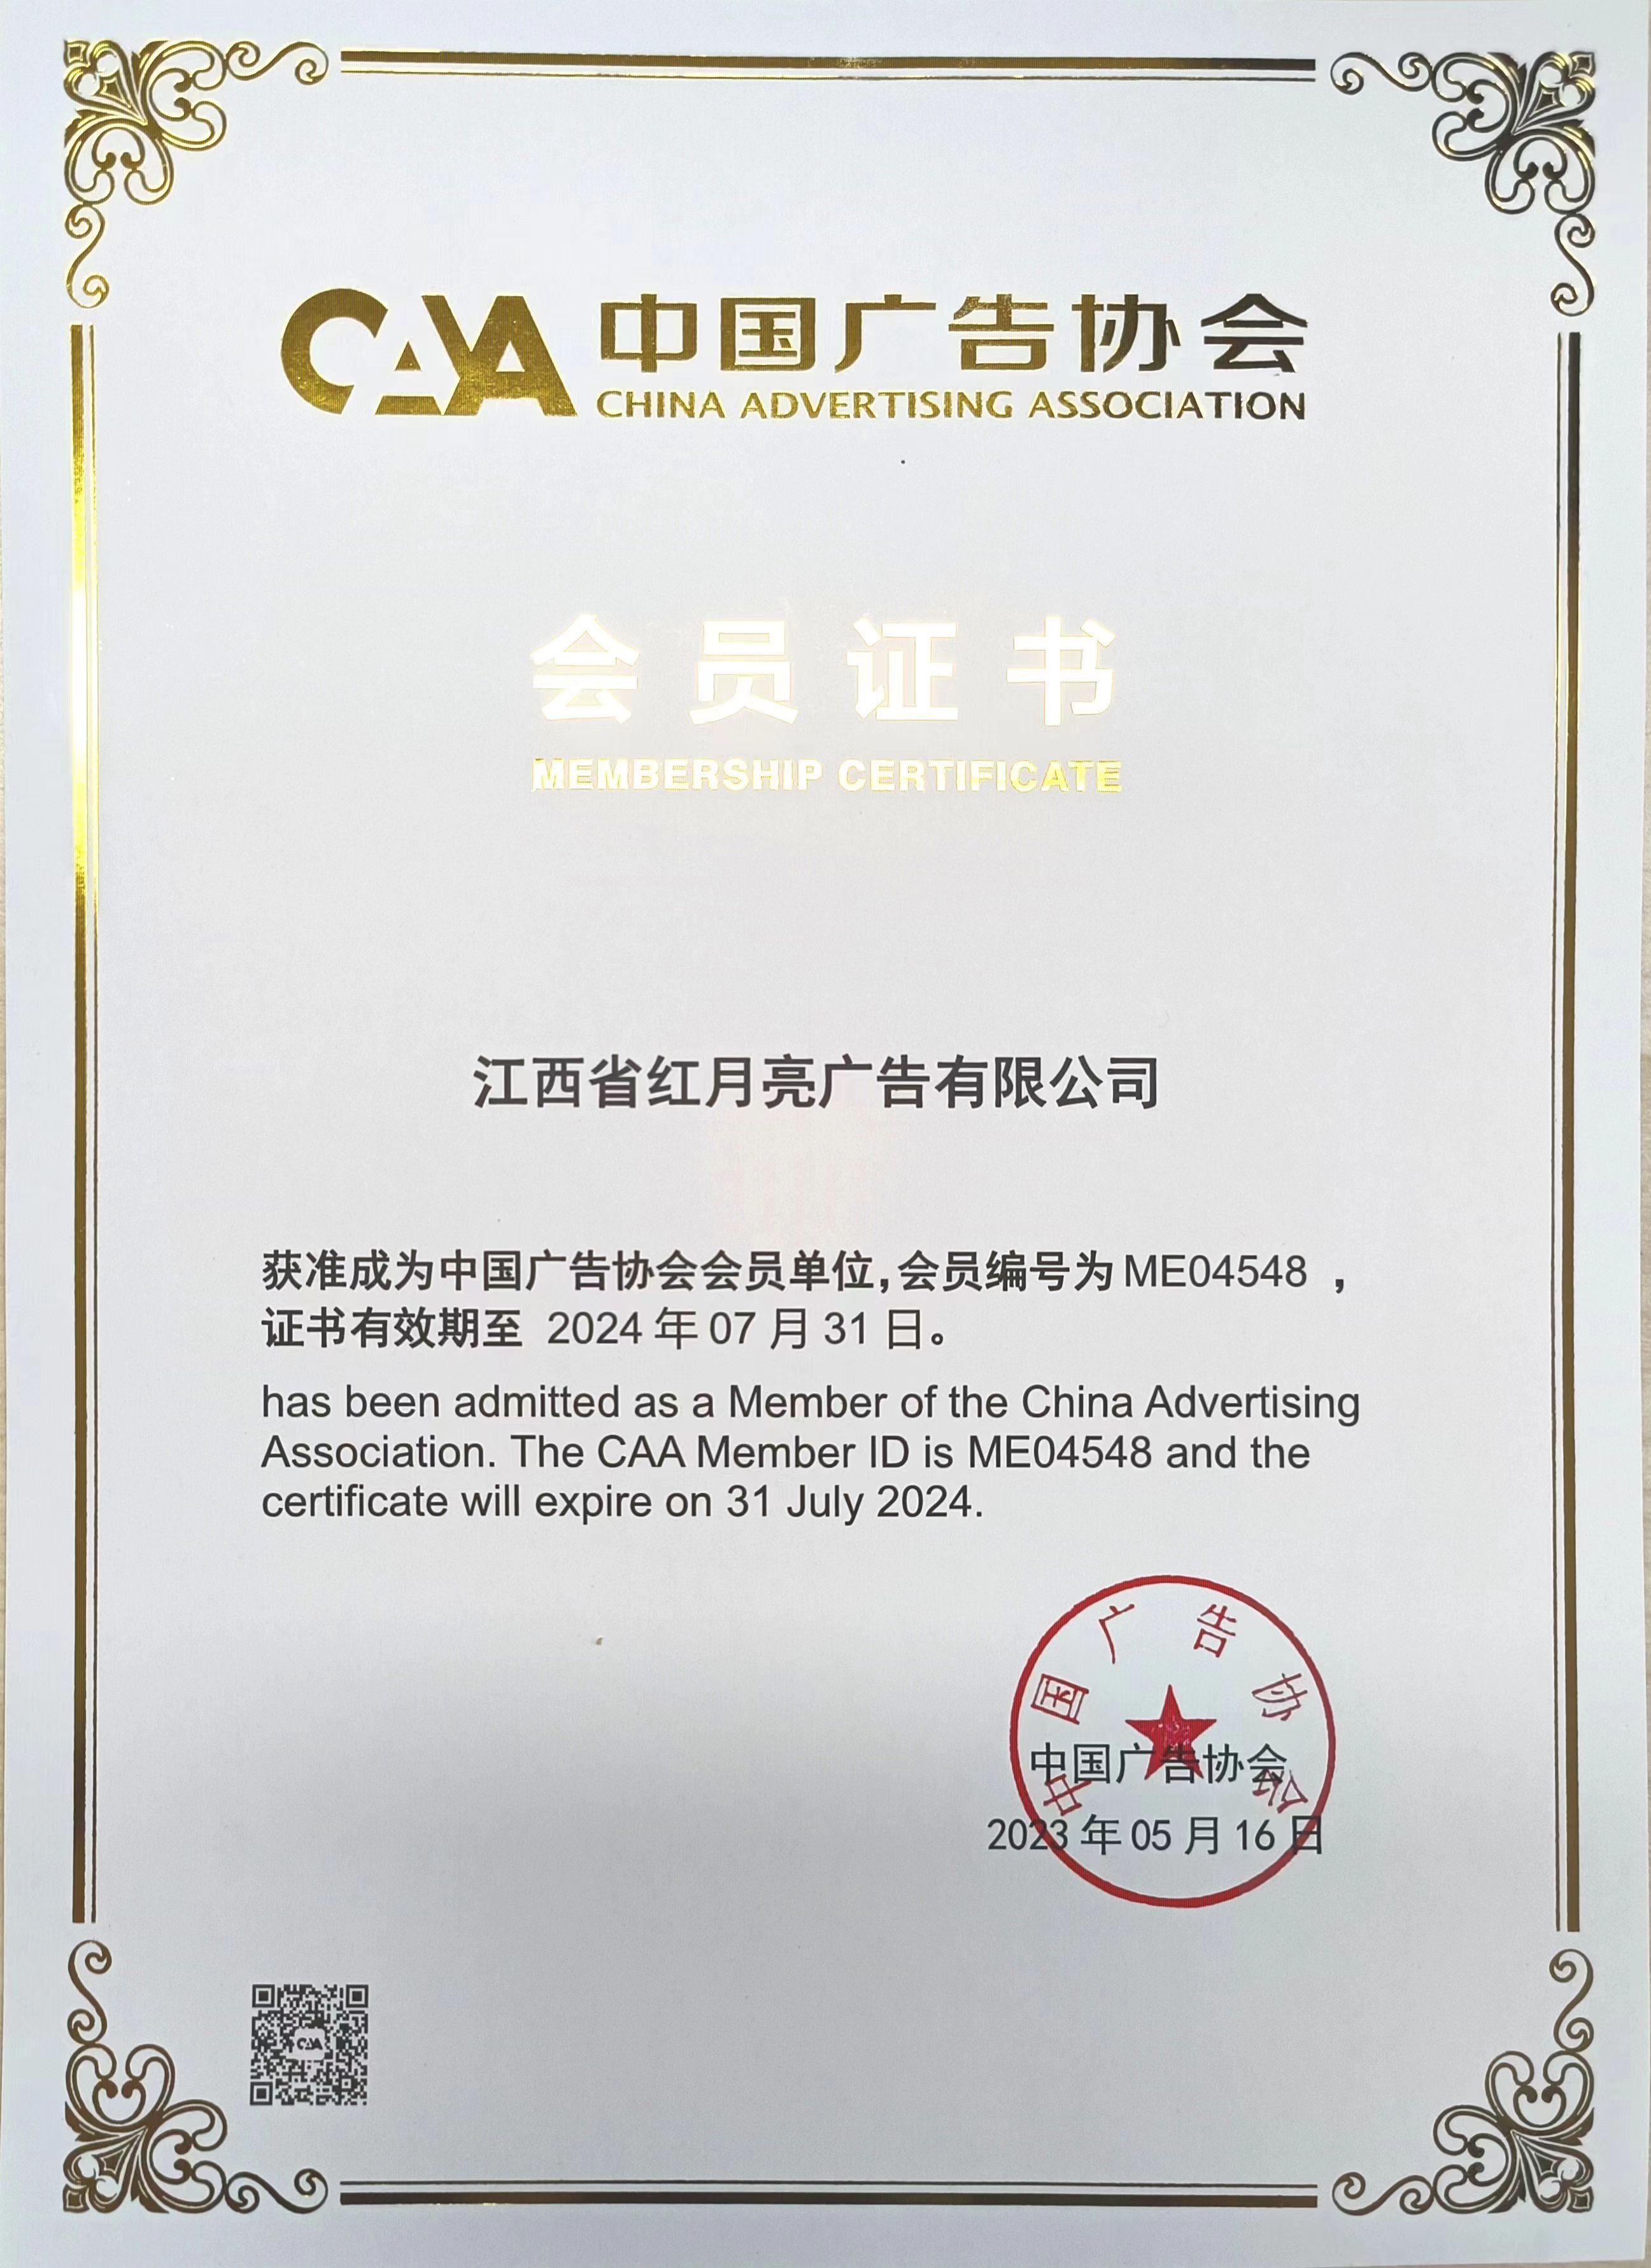 江西省红月亮文化产业发展有限公司为中国广告协会会员单位